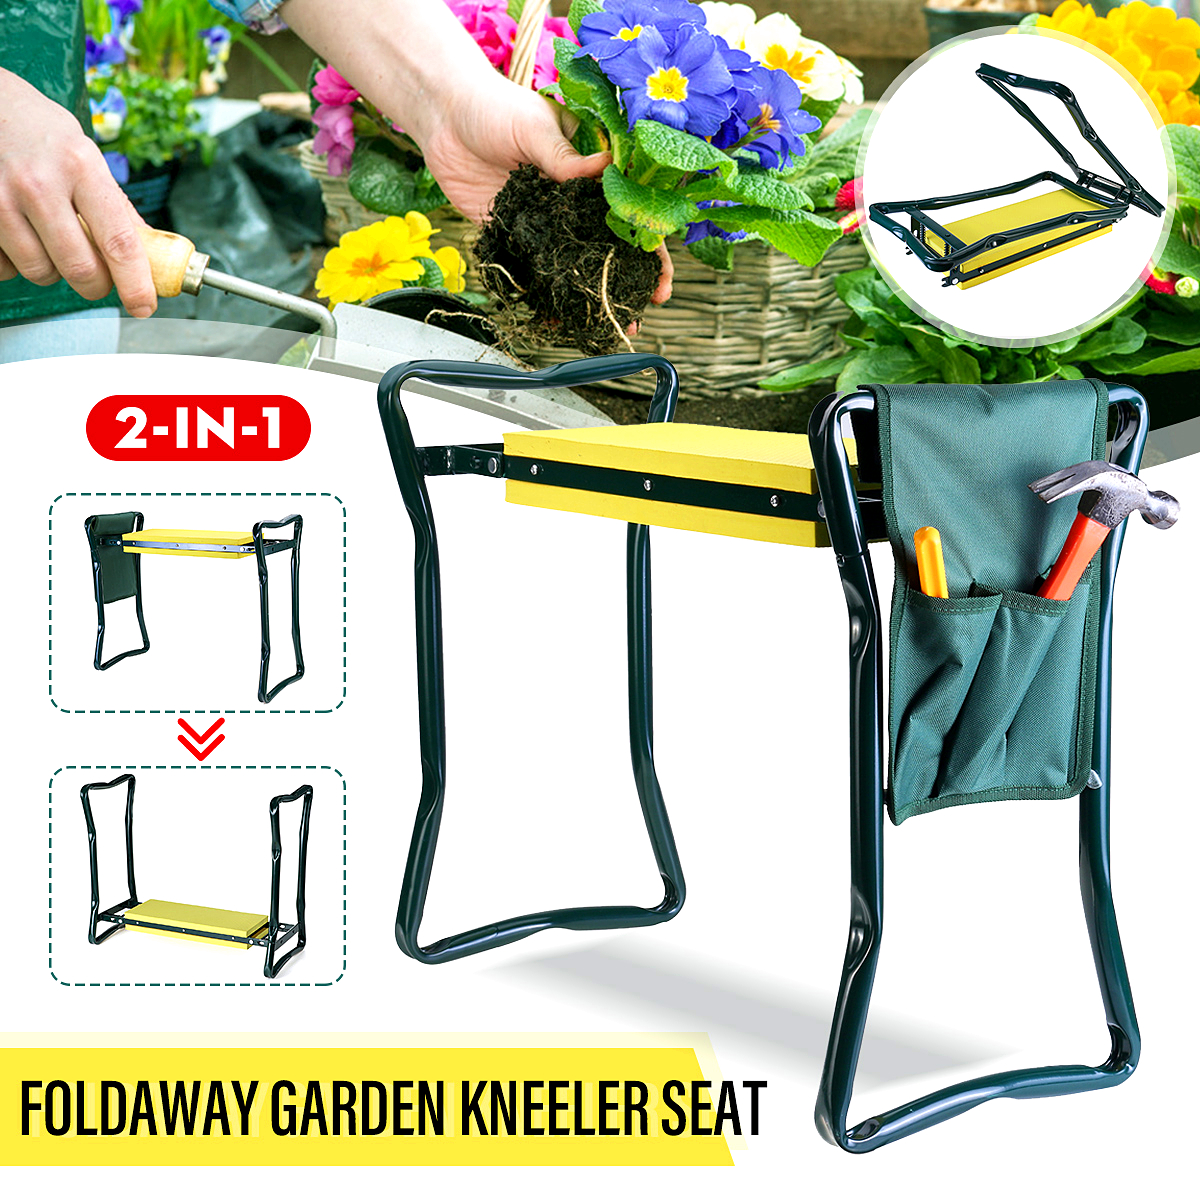 Foldaway-Garden-Kneeler-Seat-Kneeling-Bench-EVA-Soft-Pad-Stool-With-Outdoor-Pouch-1721434-1